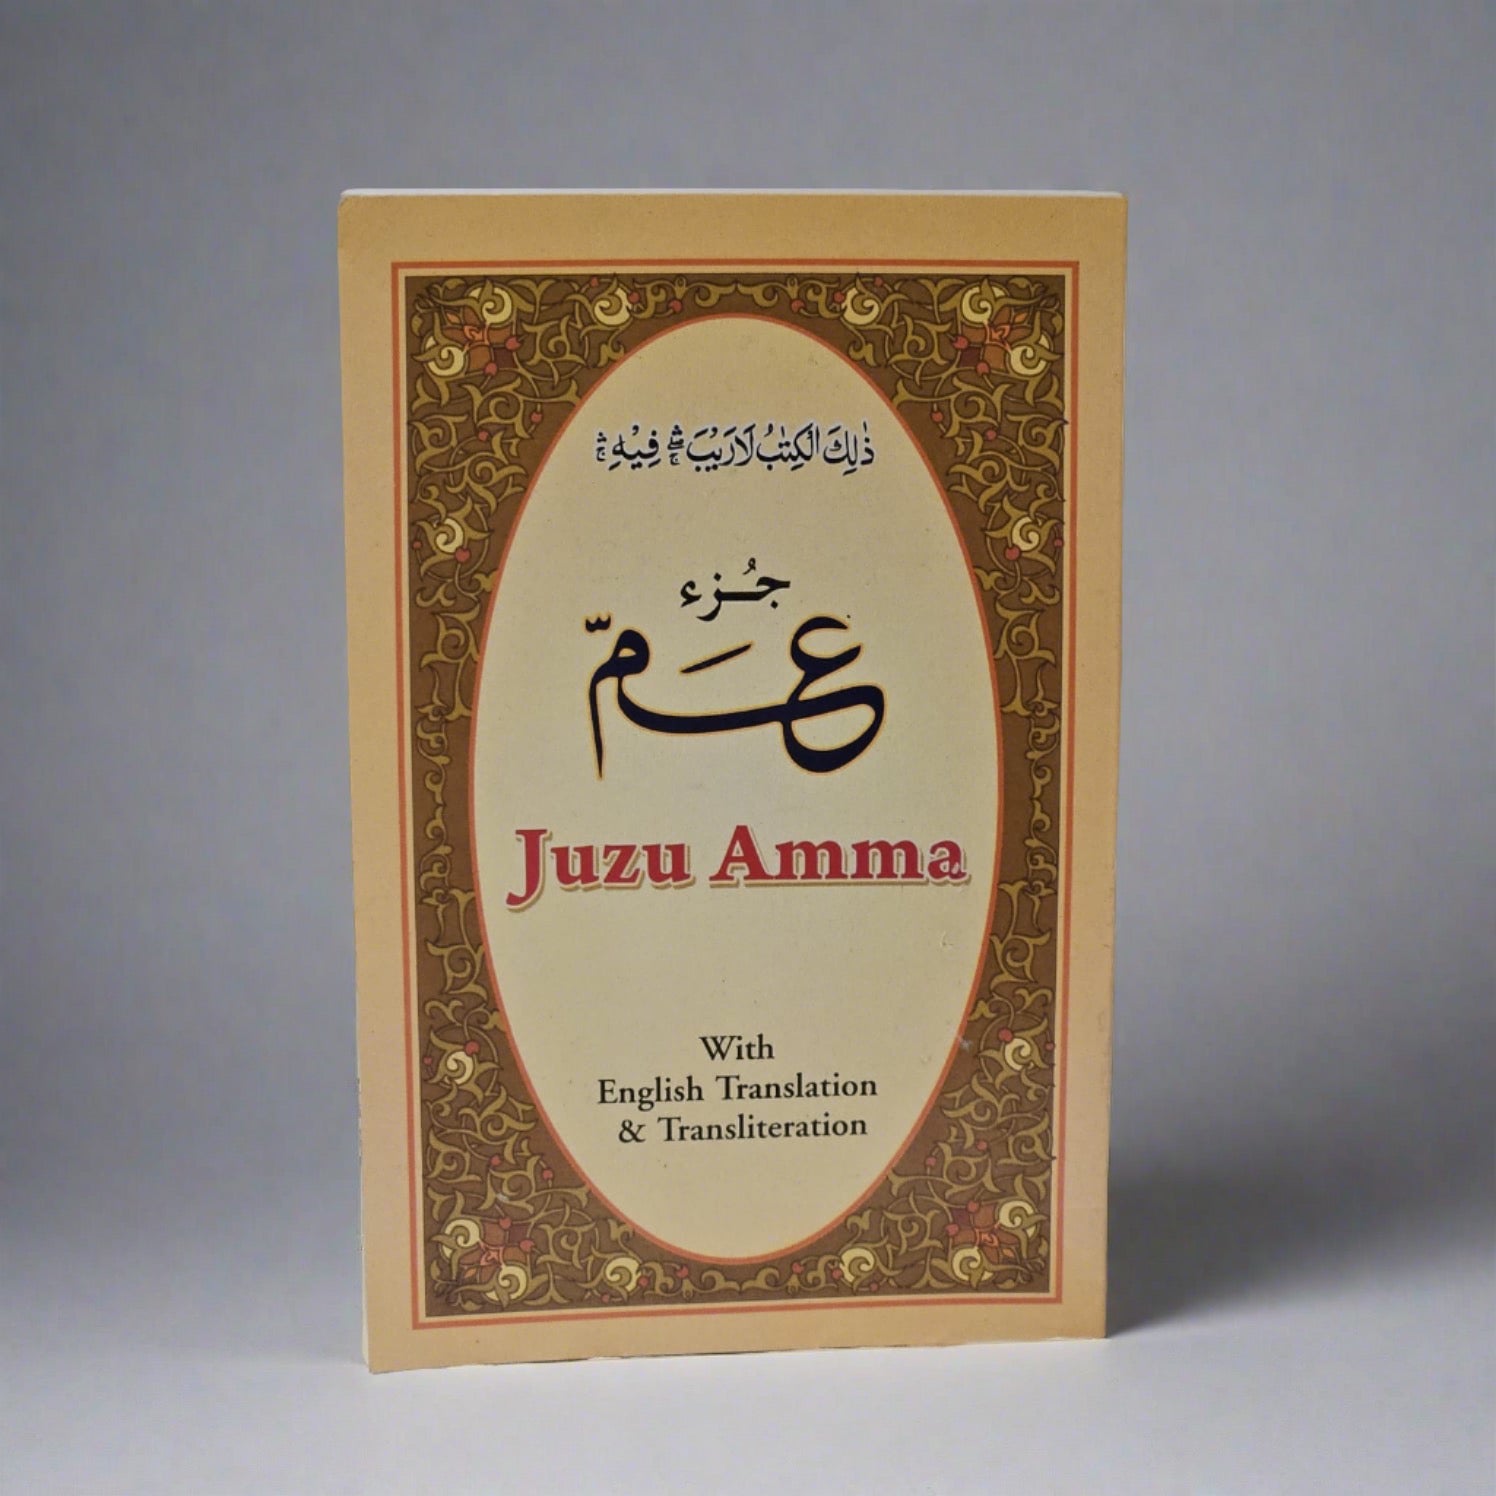 I-Juu Amma ene-English Translation &amp; Transliteration